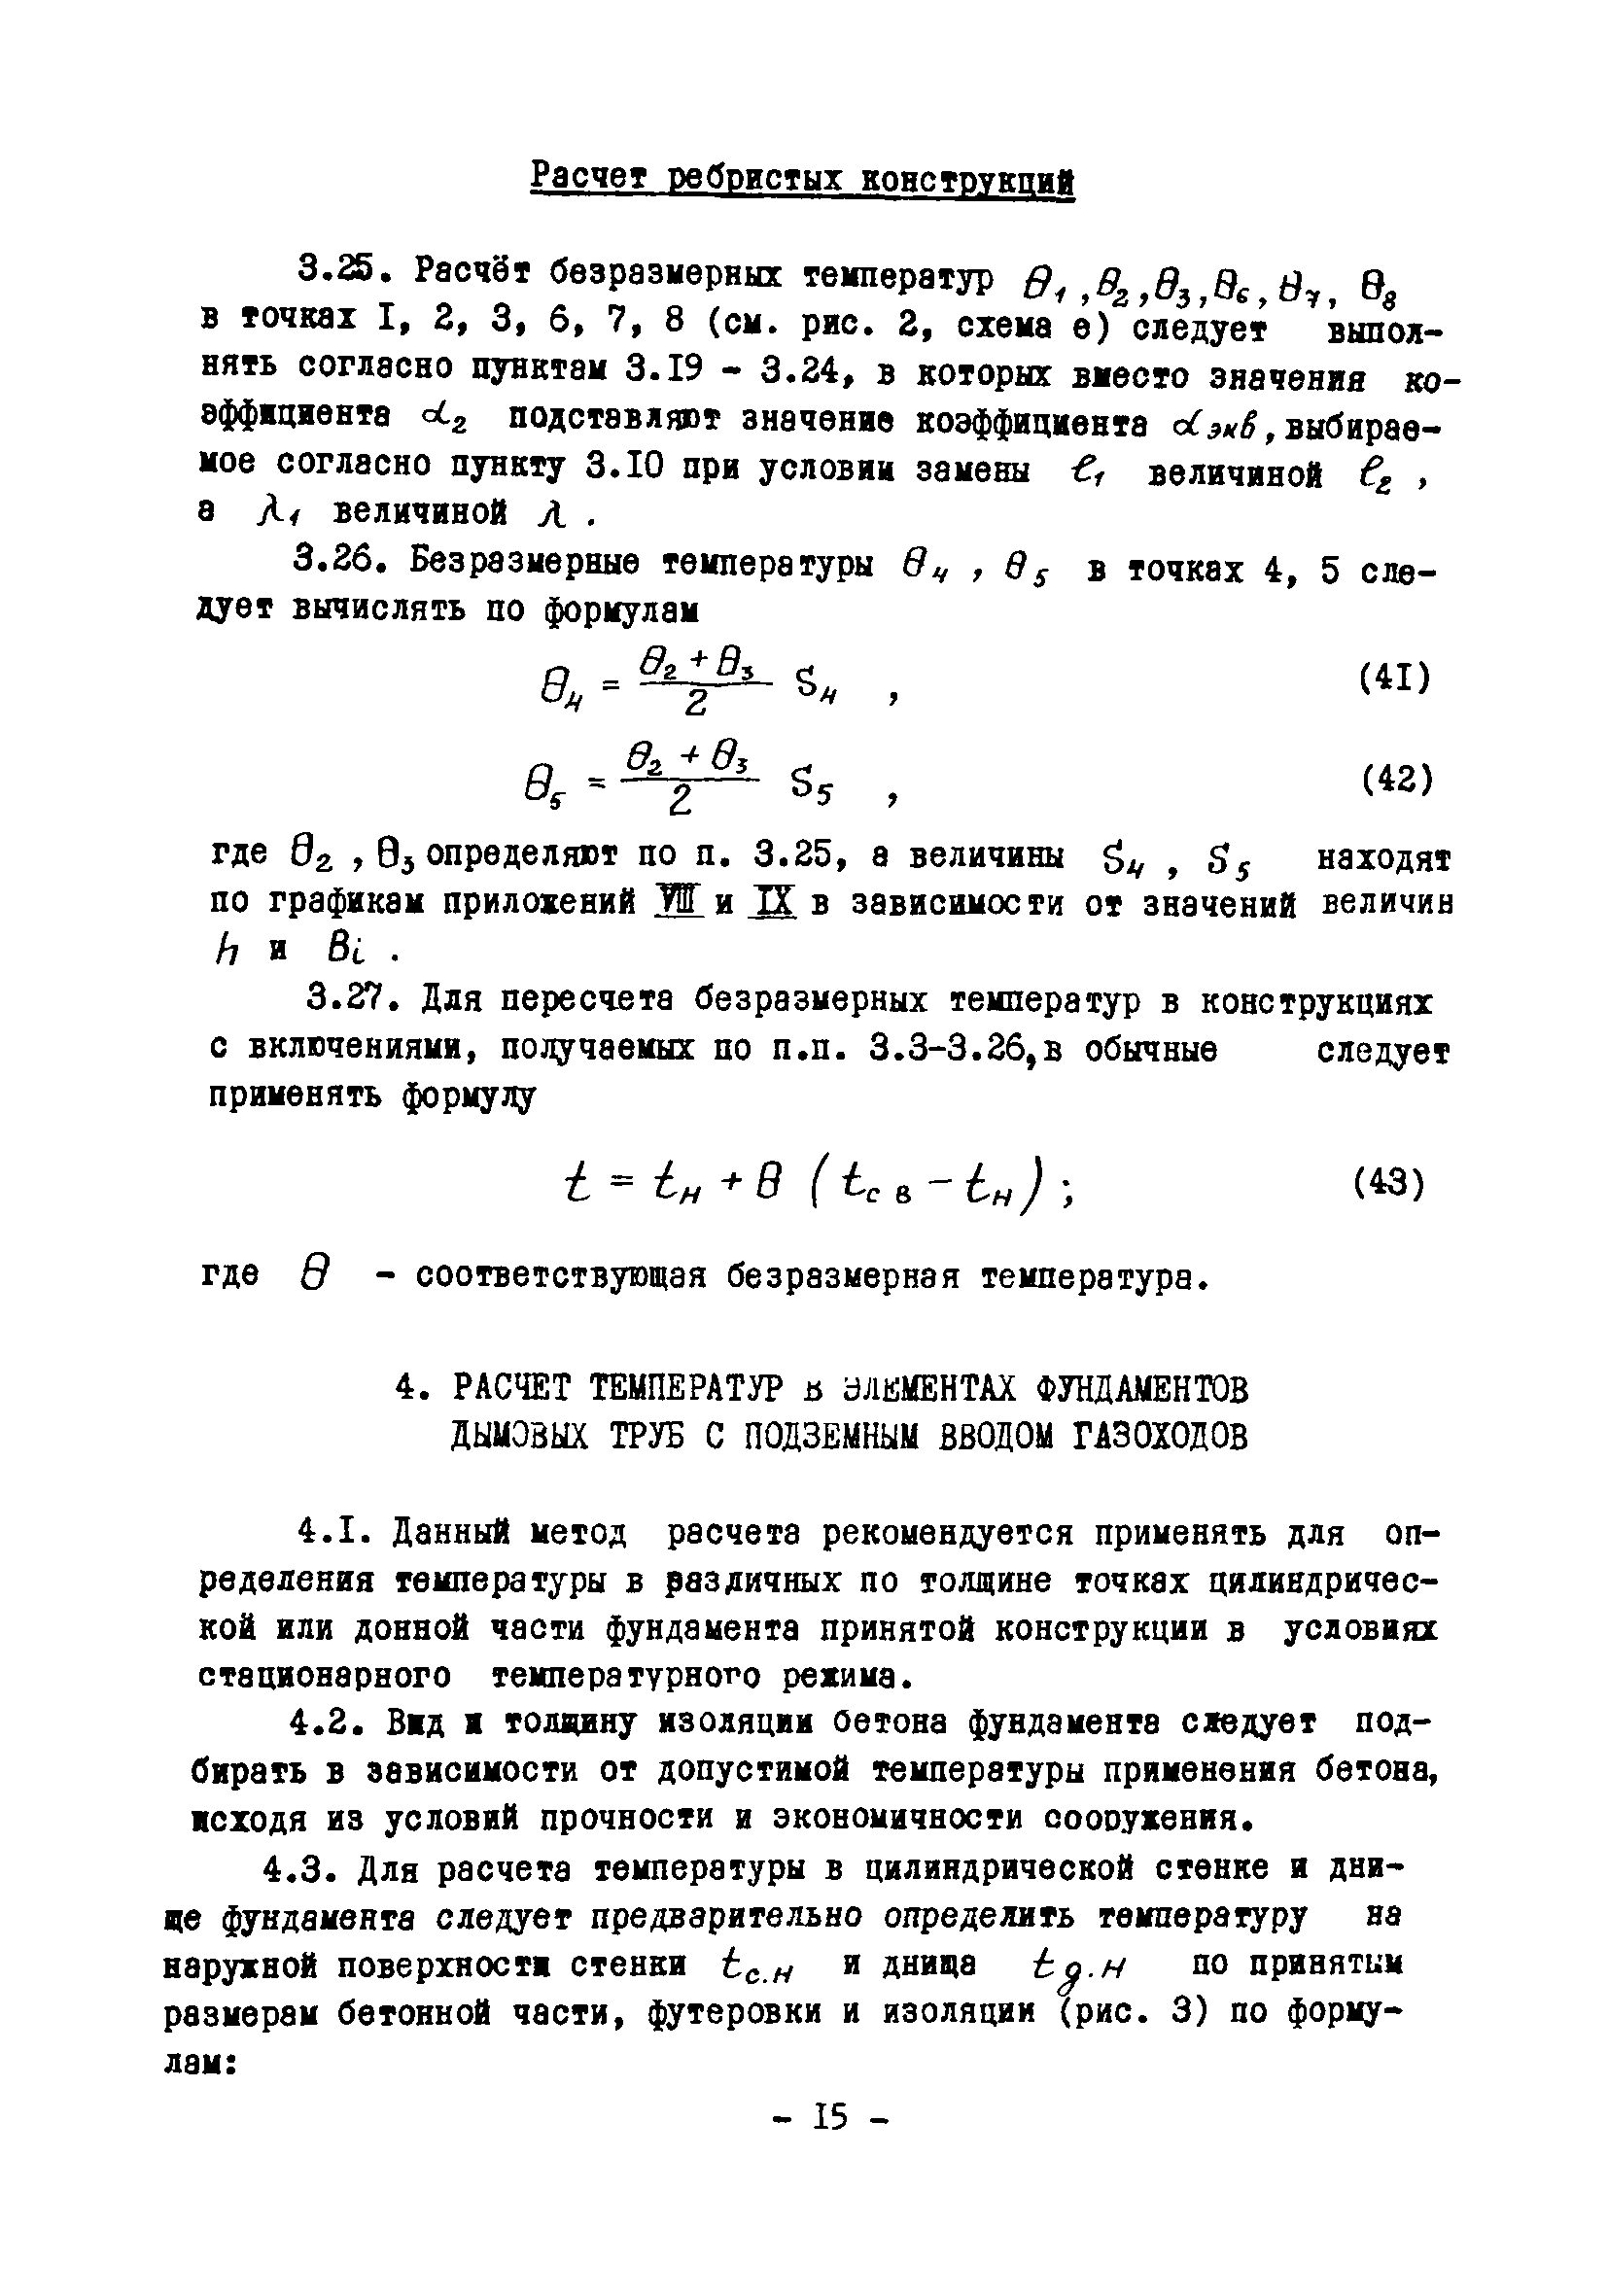 ВСН 314-73/ММСС СССР